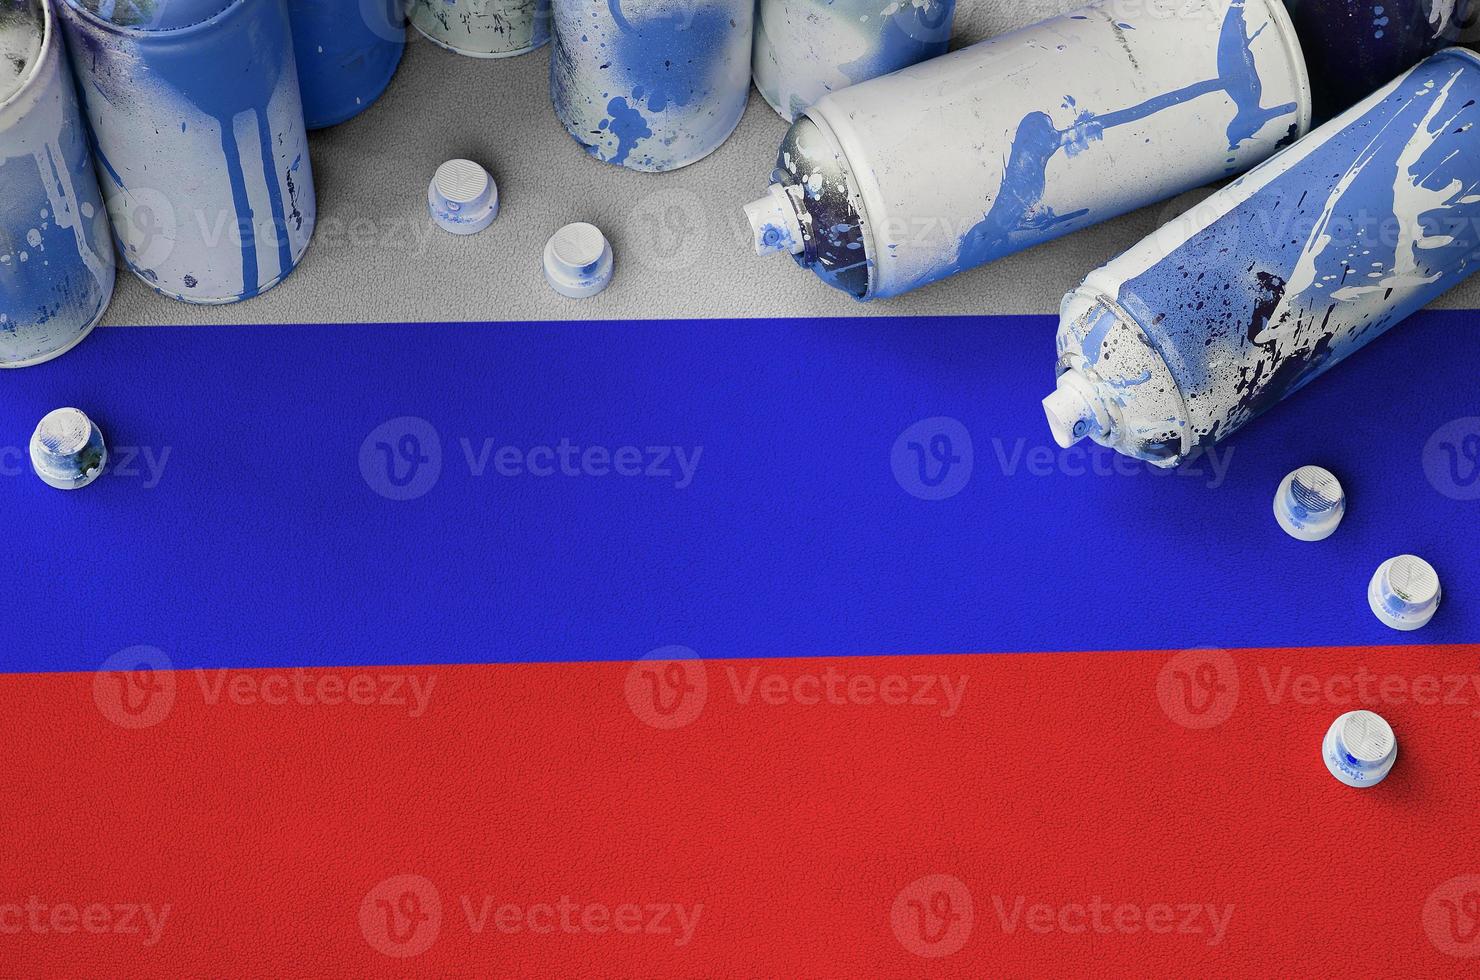 Russie drapeau et peu utilisé aérosol vaporisateur canettes pour graffiti peinture. rue art culture concept photo